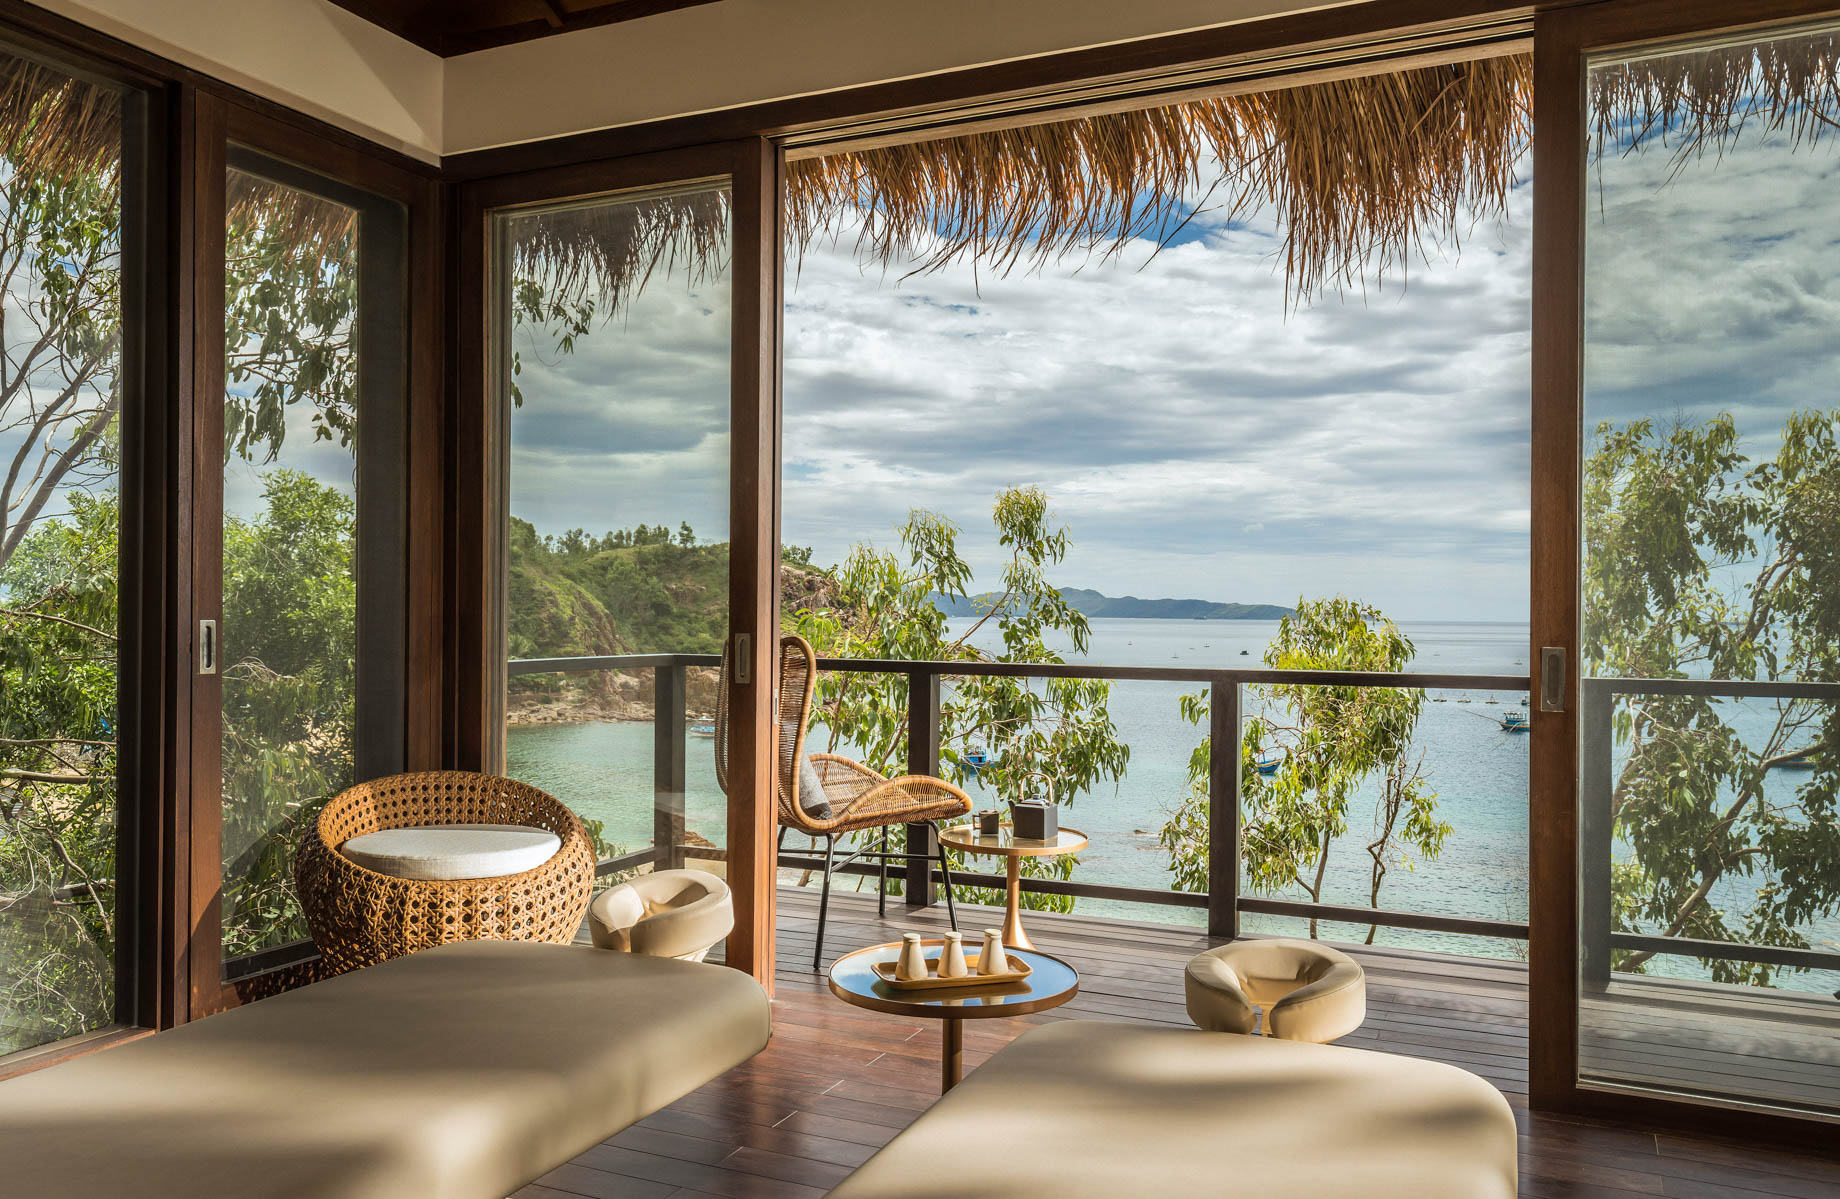 Anantara Quy Nhon Villas Resort – Quy Nhon, Vietnam – Spa Hillside Treatment Room Bay View